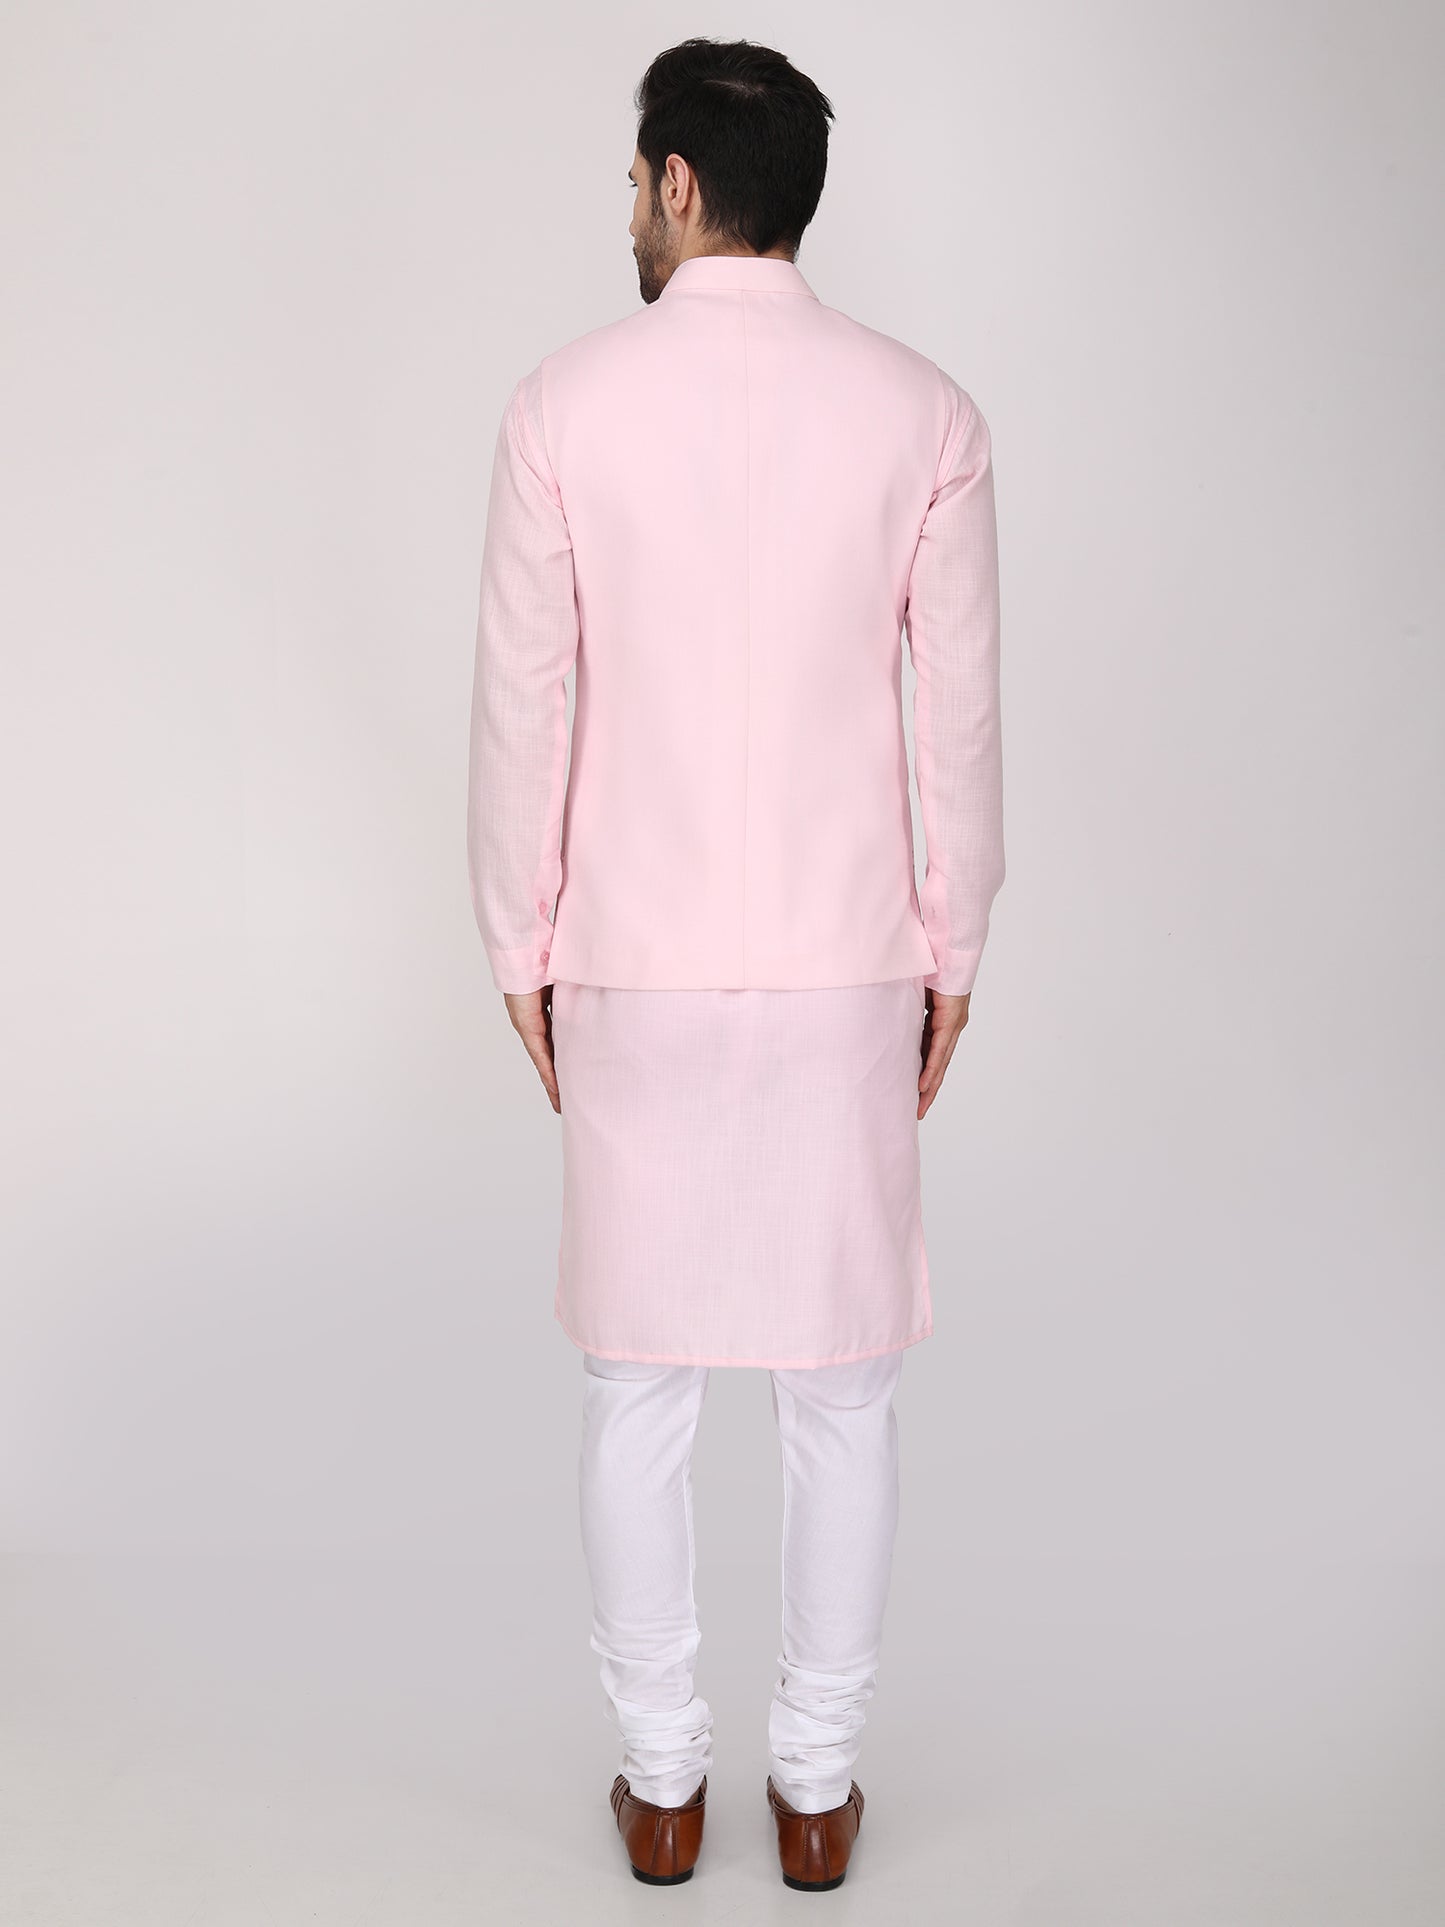 Resham Embroidered Pink Nehru Jacket with Kurta Churidaar